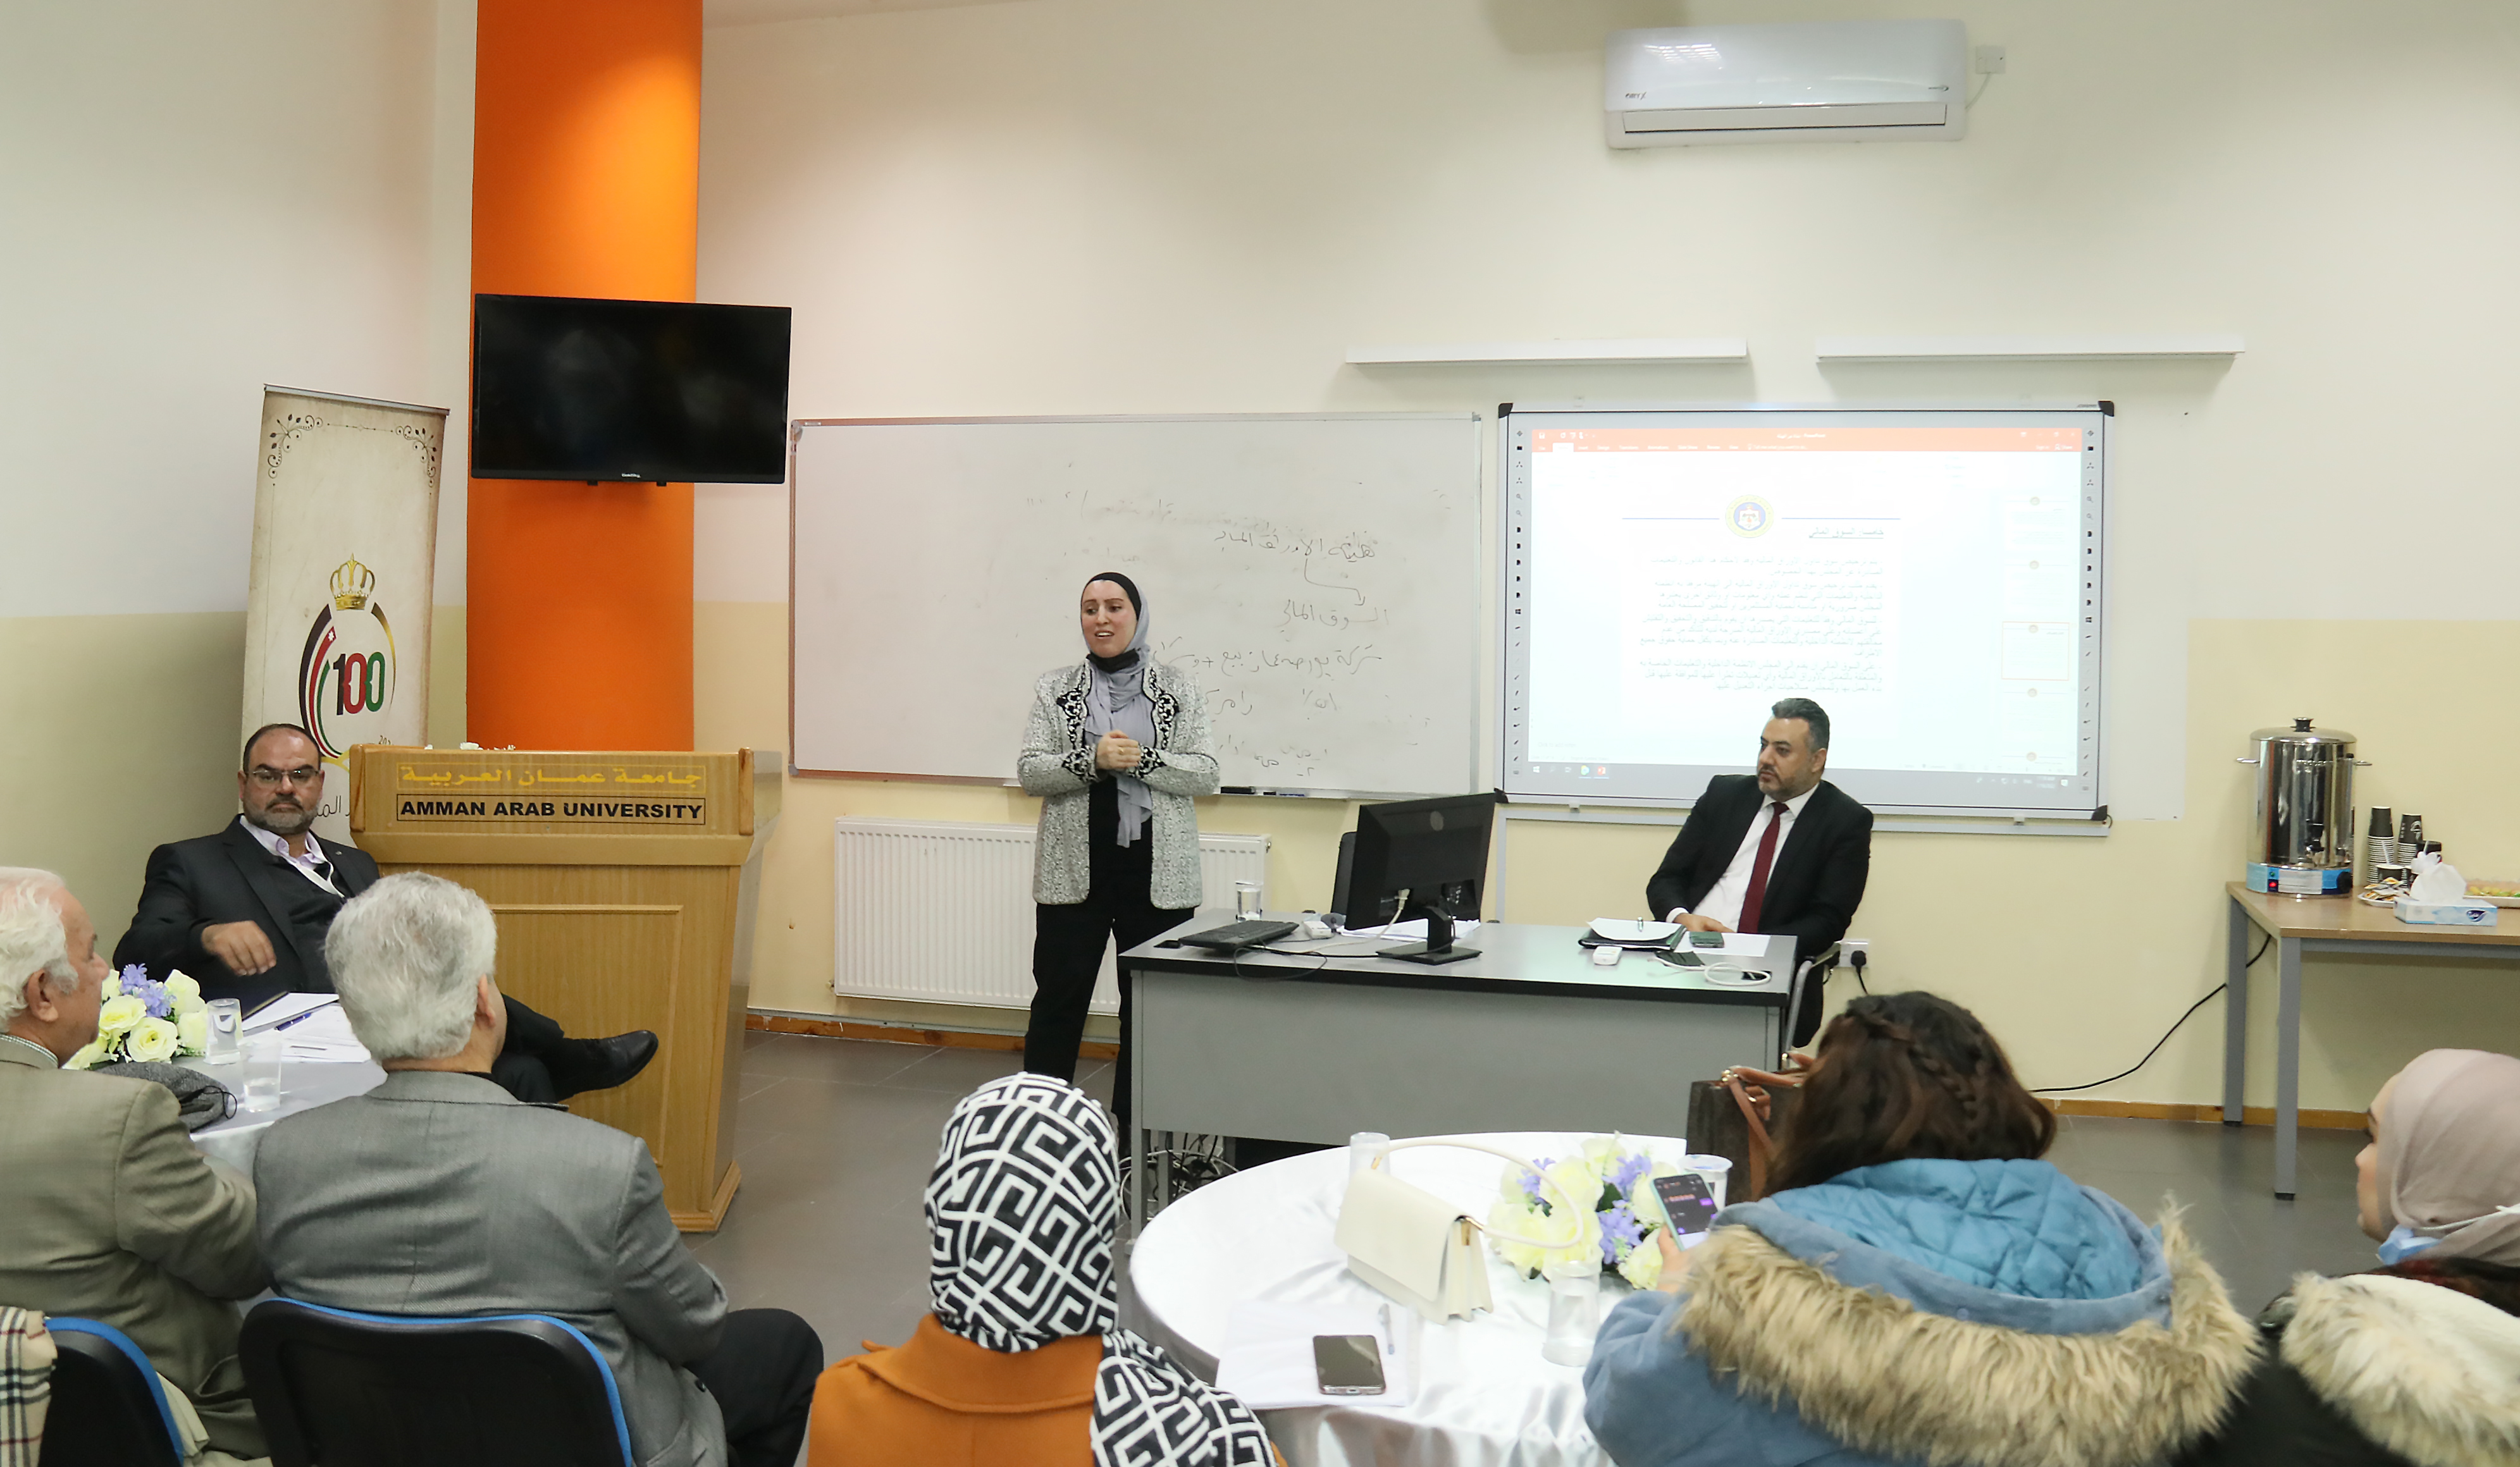 ورشة تدريبية بعنوان "هيئة الأوراق المالية" في "عمان العربية"5